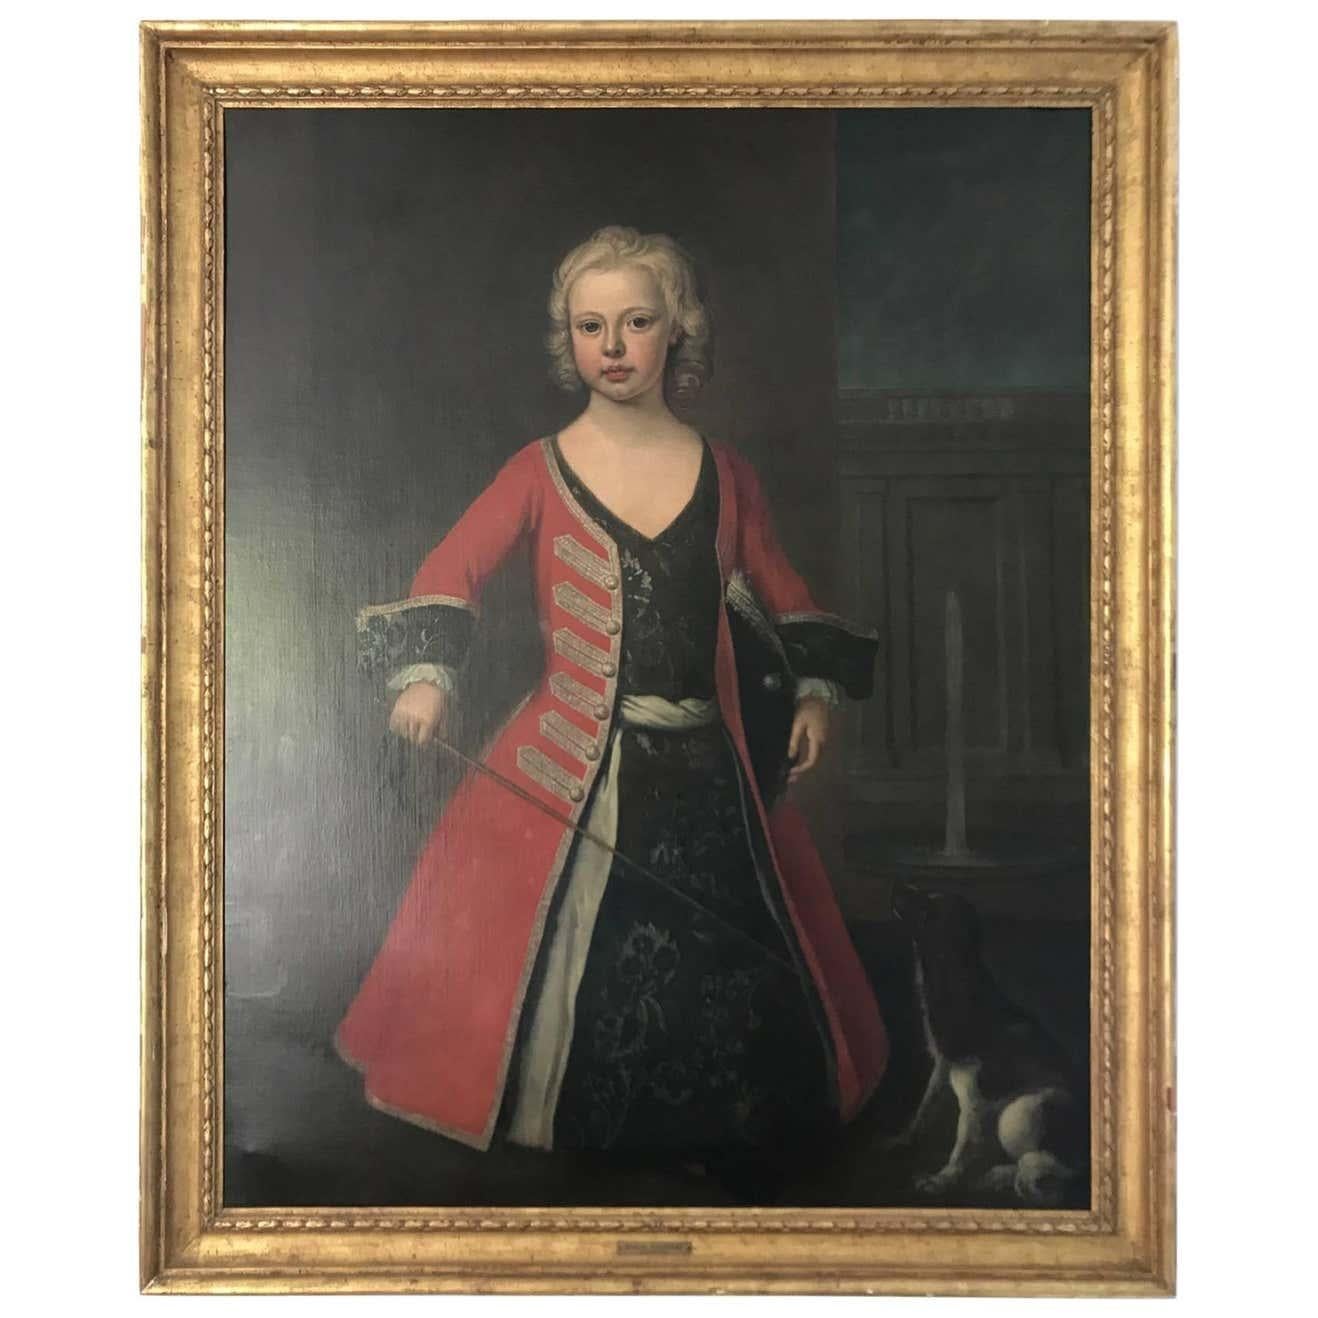 Attribué à Joseph Highmore (1692-1789) 'Portrait d'un enfant - peut-être le prince William duc de Cumberland, fils du roi George II'.
Huile sur toile peinte par Joseph Highmore. Représentation de William, jeune garçon, en tenue militaire. Il semble